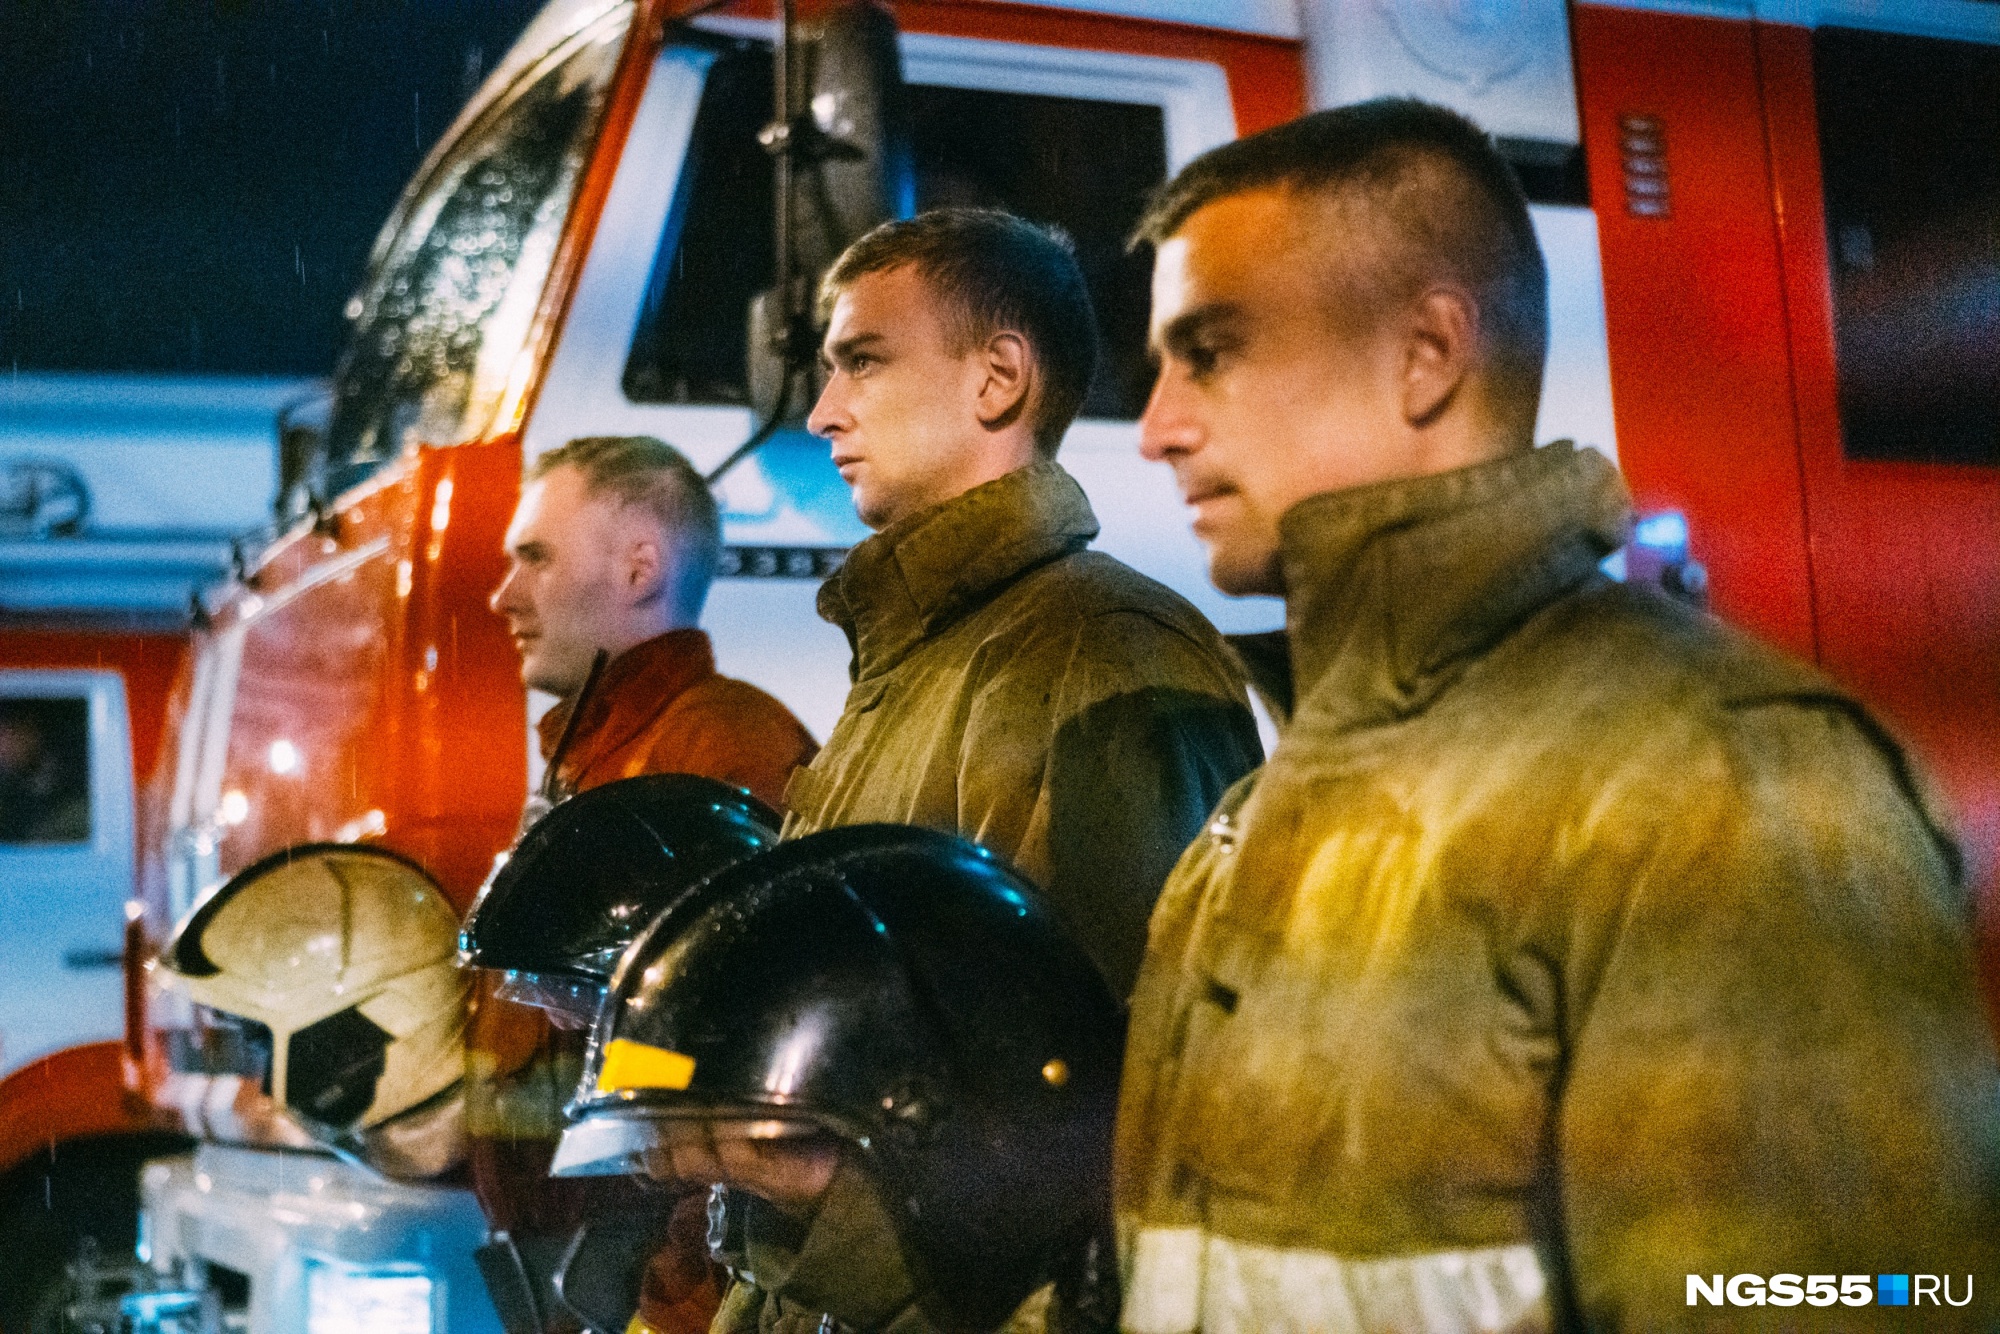 В Омске почтили память погибшего Зиничева, включив сирены пожарных машин